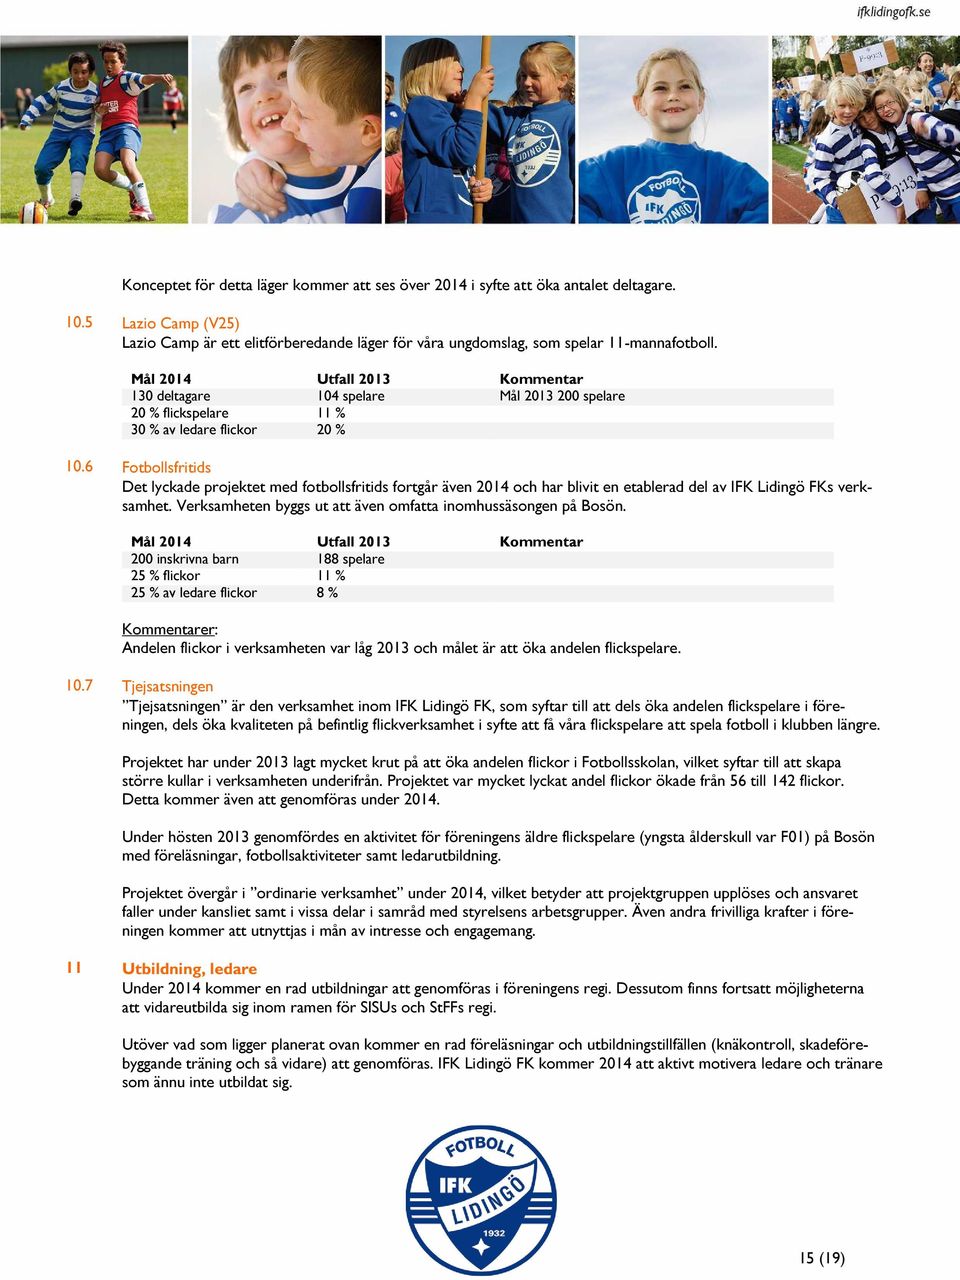 etablerad del av IFK Lidingö FKs verksamhet Verksamheten byggs ut att även omfatta inomhussäsongen på Bosön 200 inskrivna barn 188 spelare 25 % flickor 11 % 25 % av ledare flickor 8 % Kommentarer: